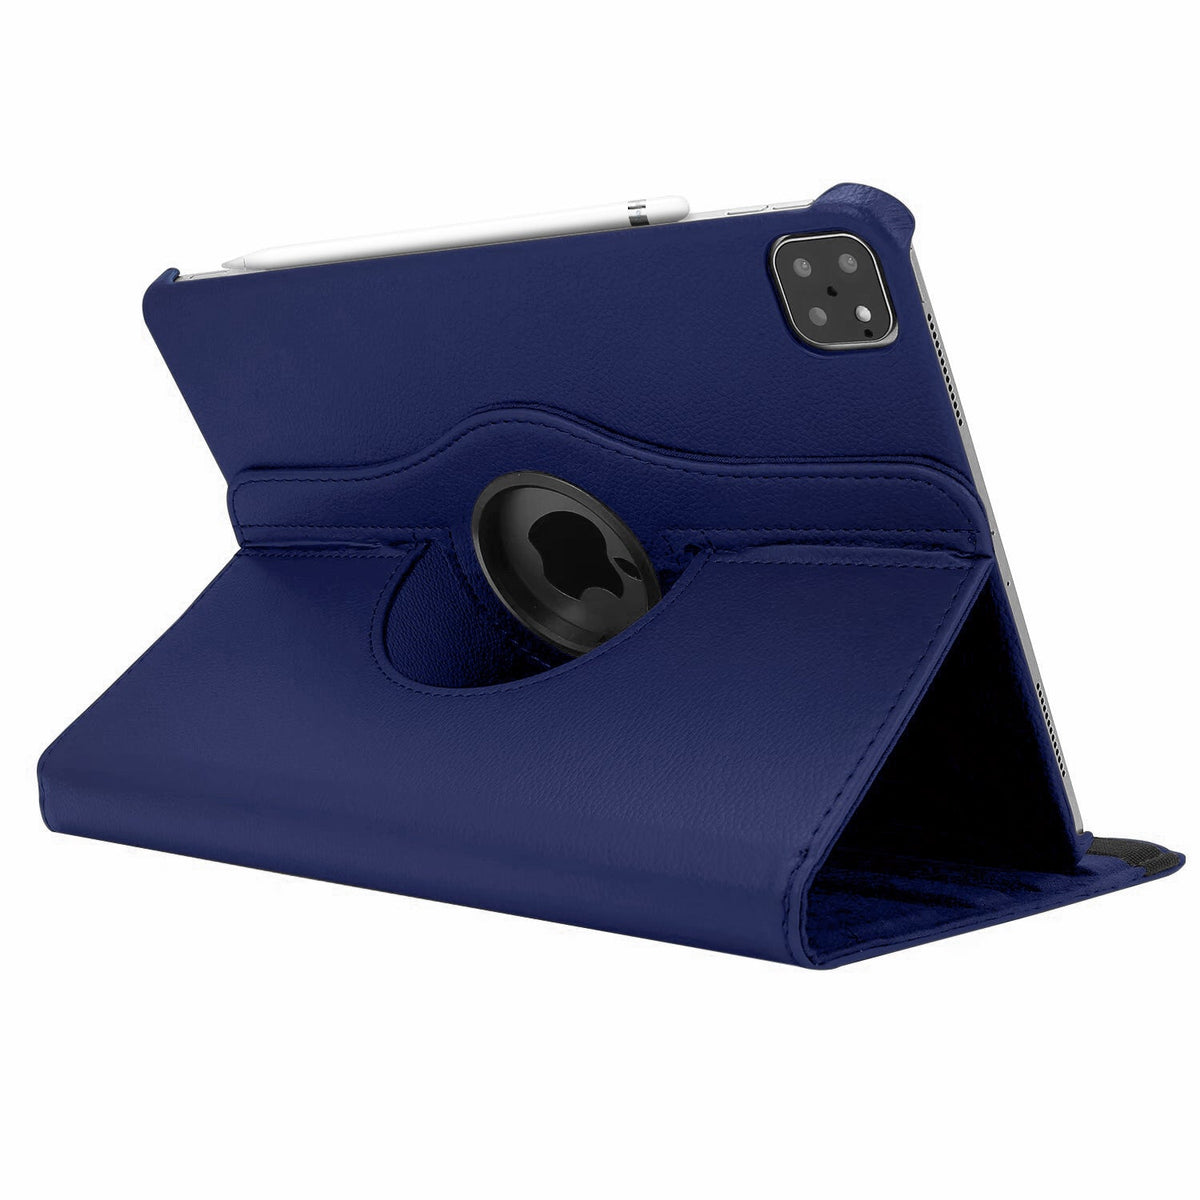 Leather iPad Case, Premium Genuine Leather